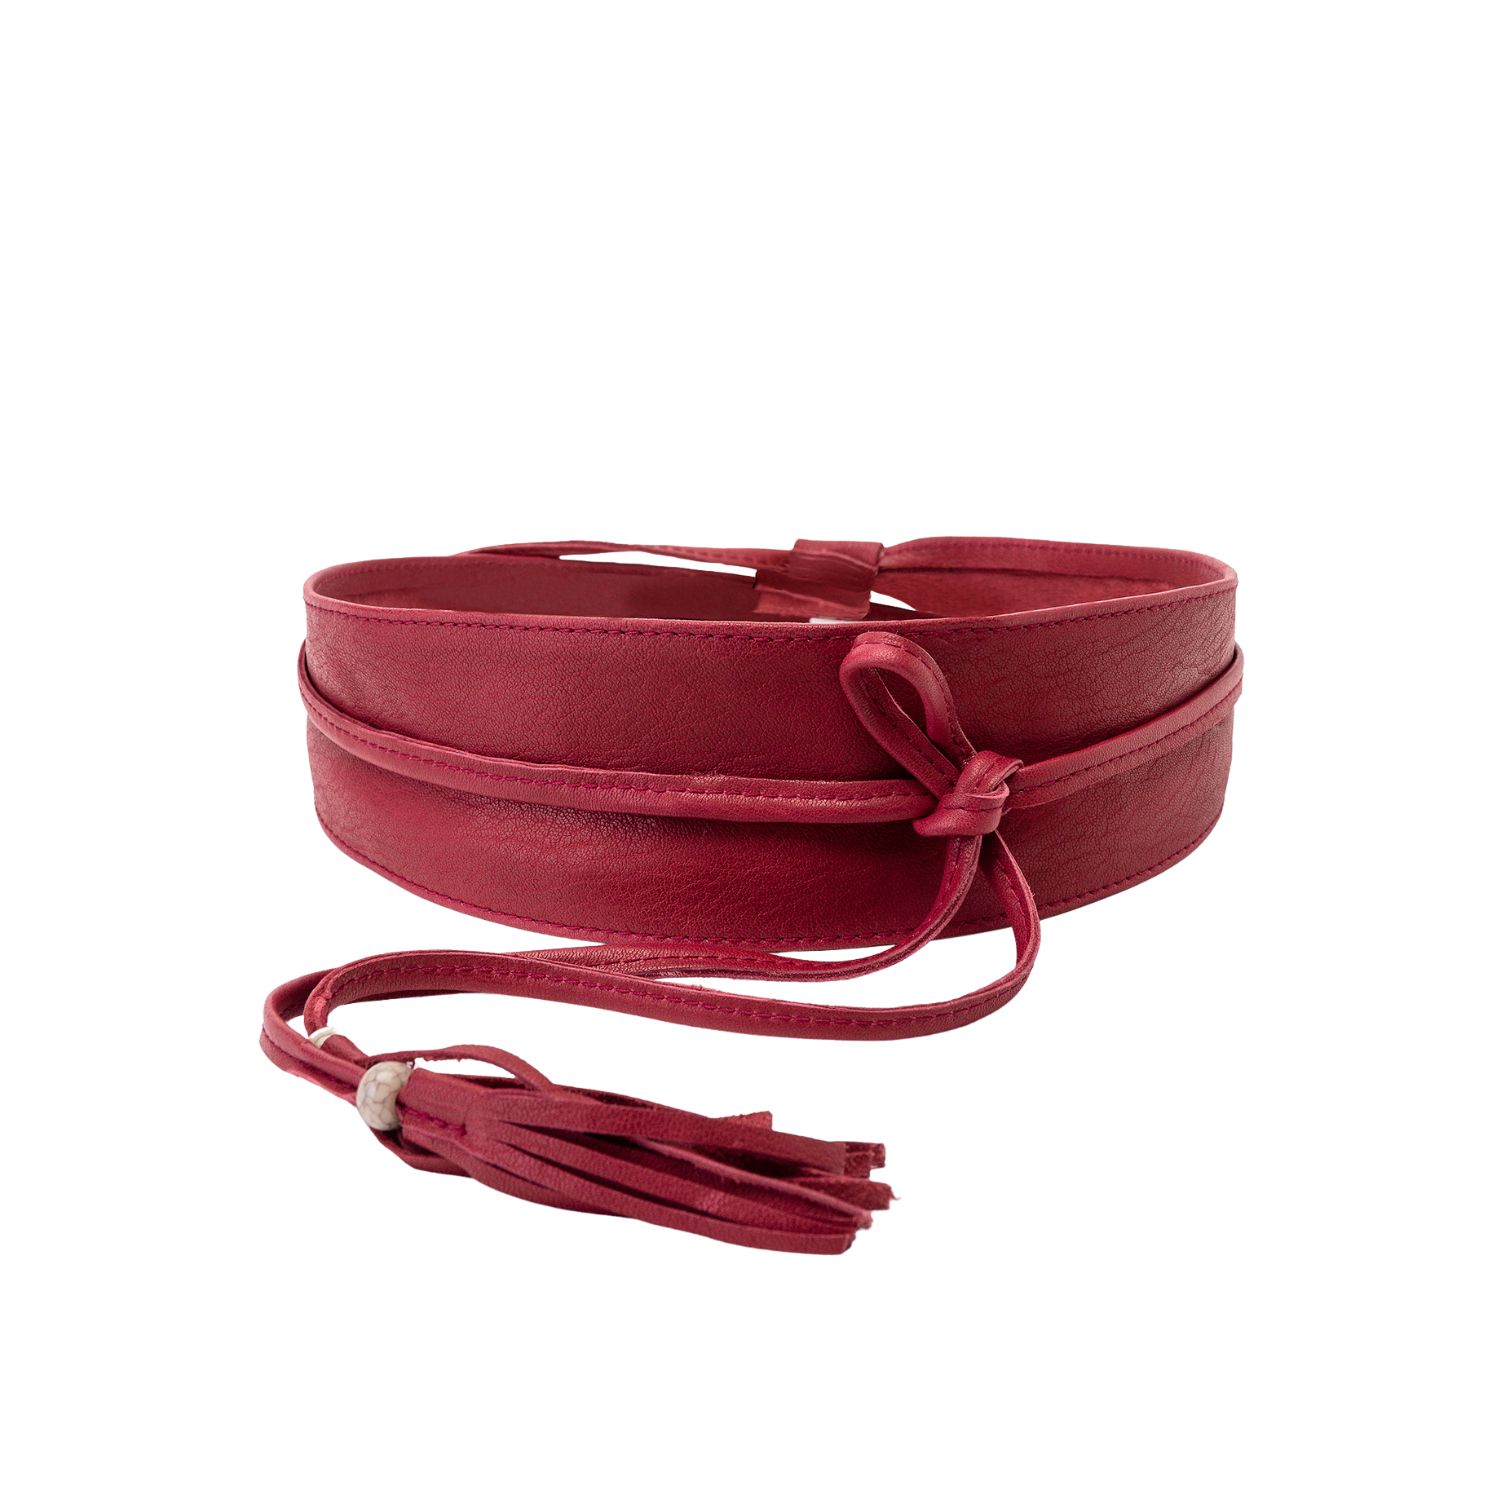 Juan-jo Women's Red Leather Obi Belt With Tassels